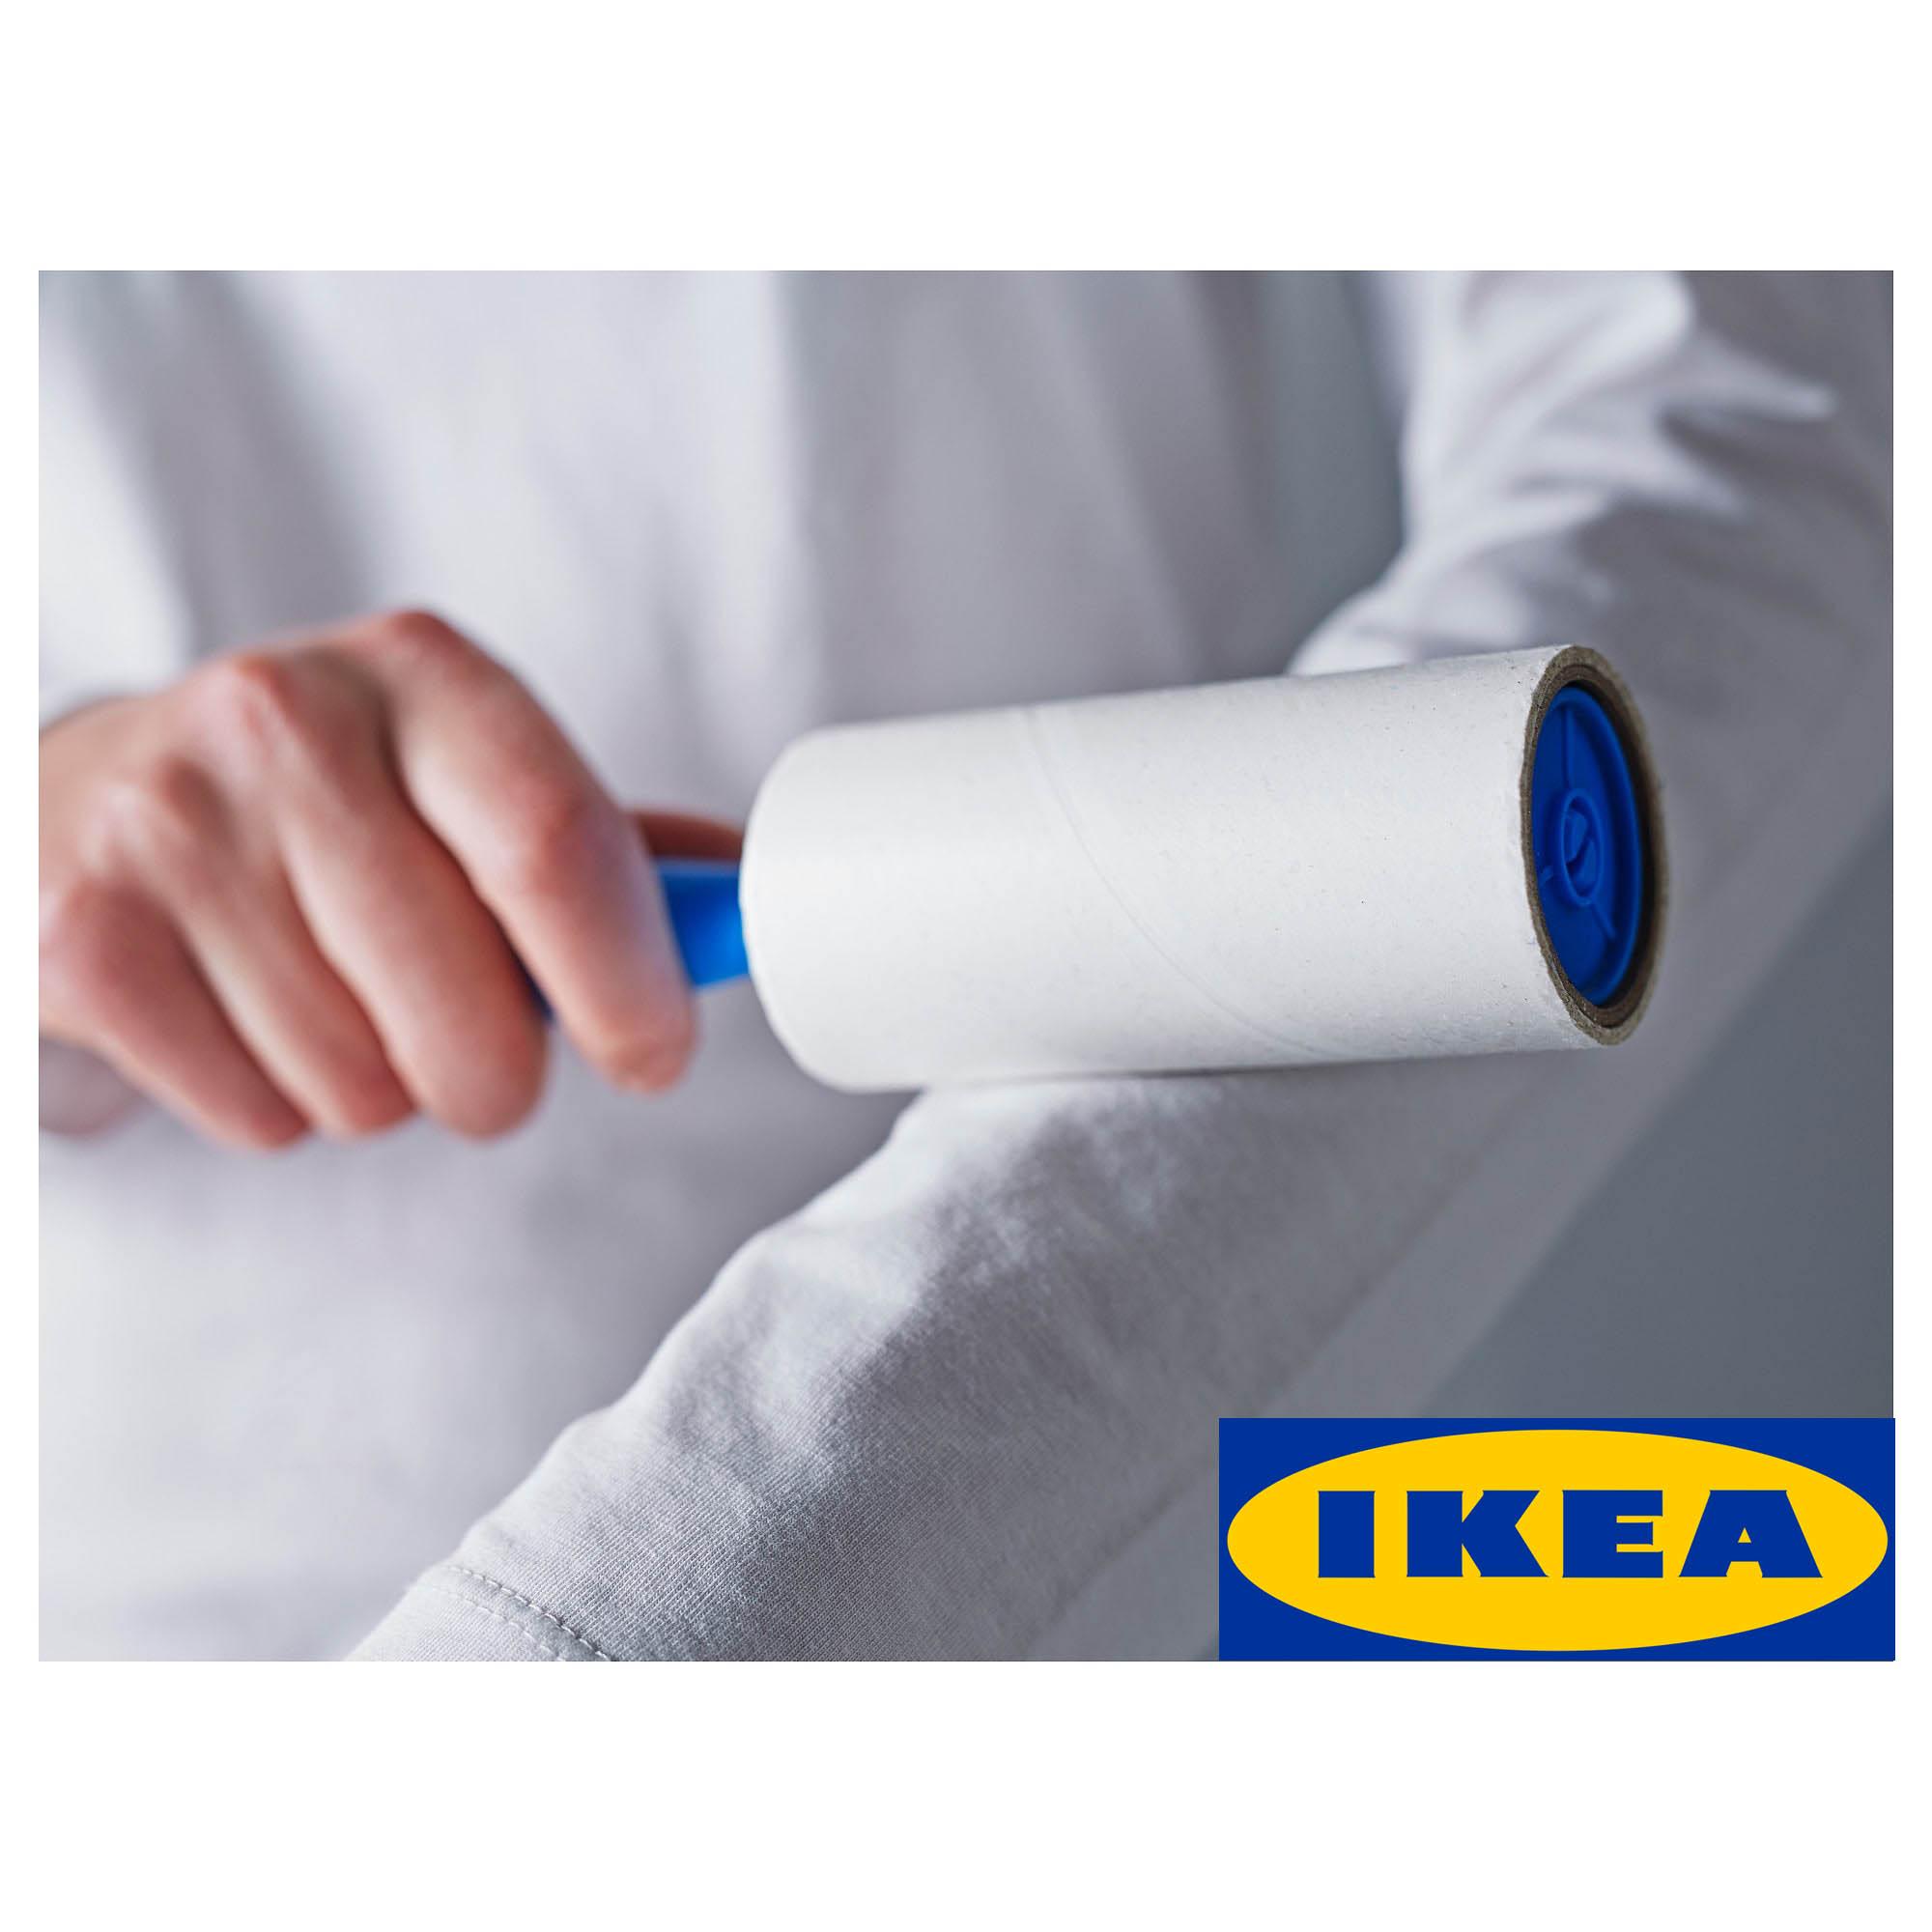 IKEA BASTIS เบสติส ลูกกลิ้งเก็บขนฝุ่นเสื้อผ้า 1ด้าม